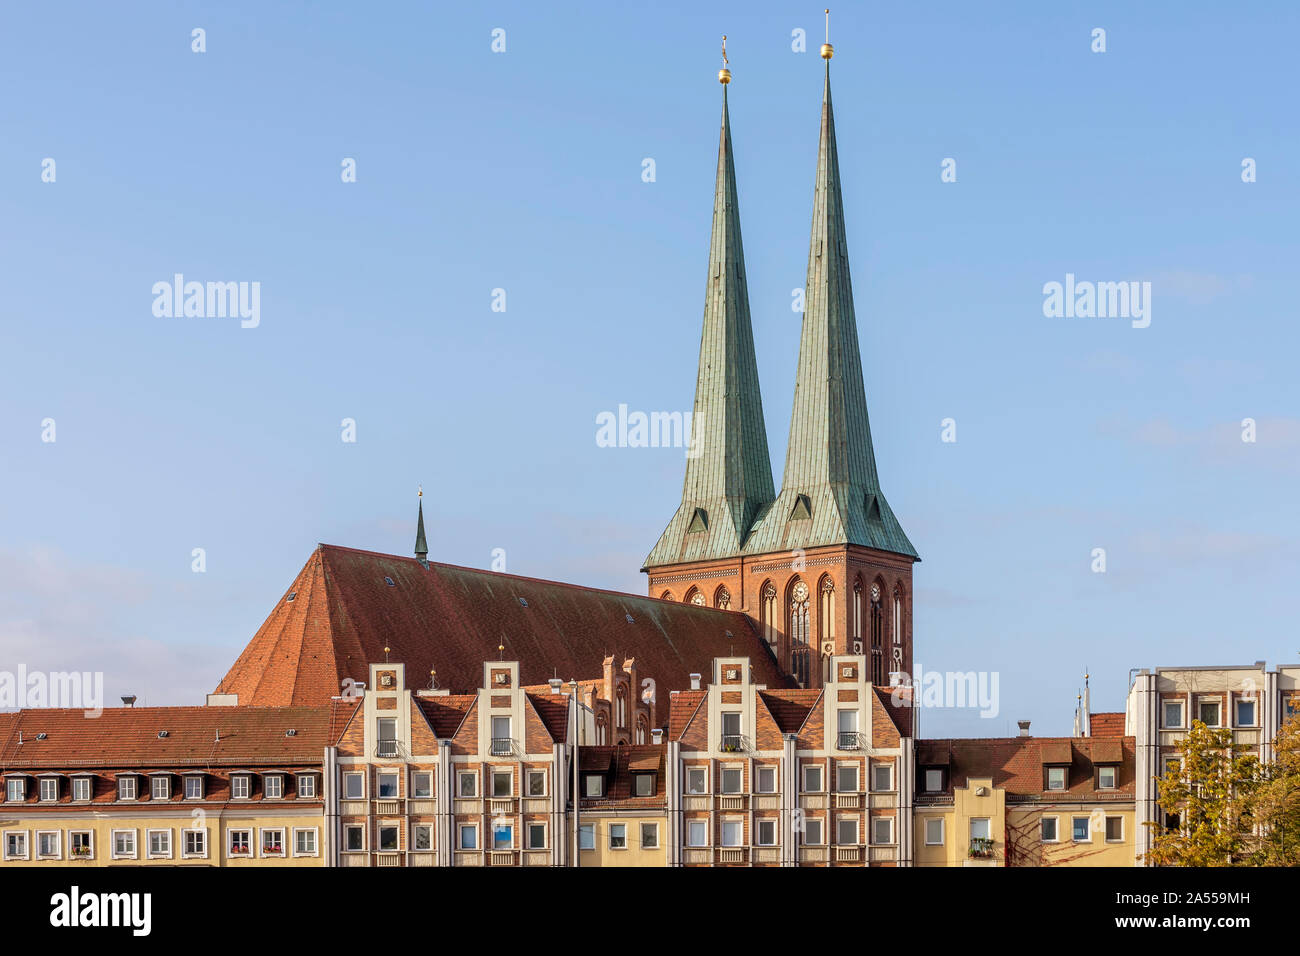 La Iglesia de San Nicolás, spiers iluminado por la luz de la mañana en el distrito Mitte de Berlín, Alemania Foto de stock